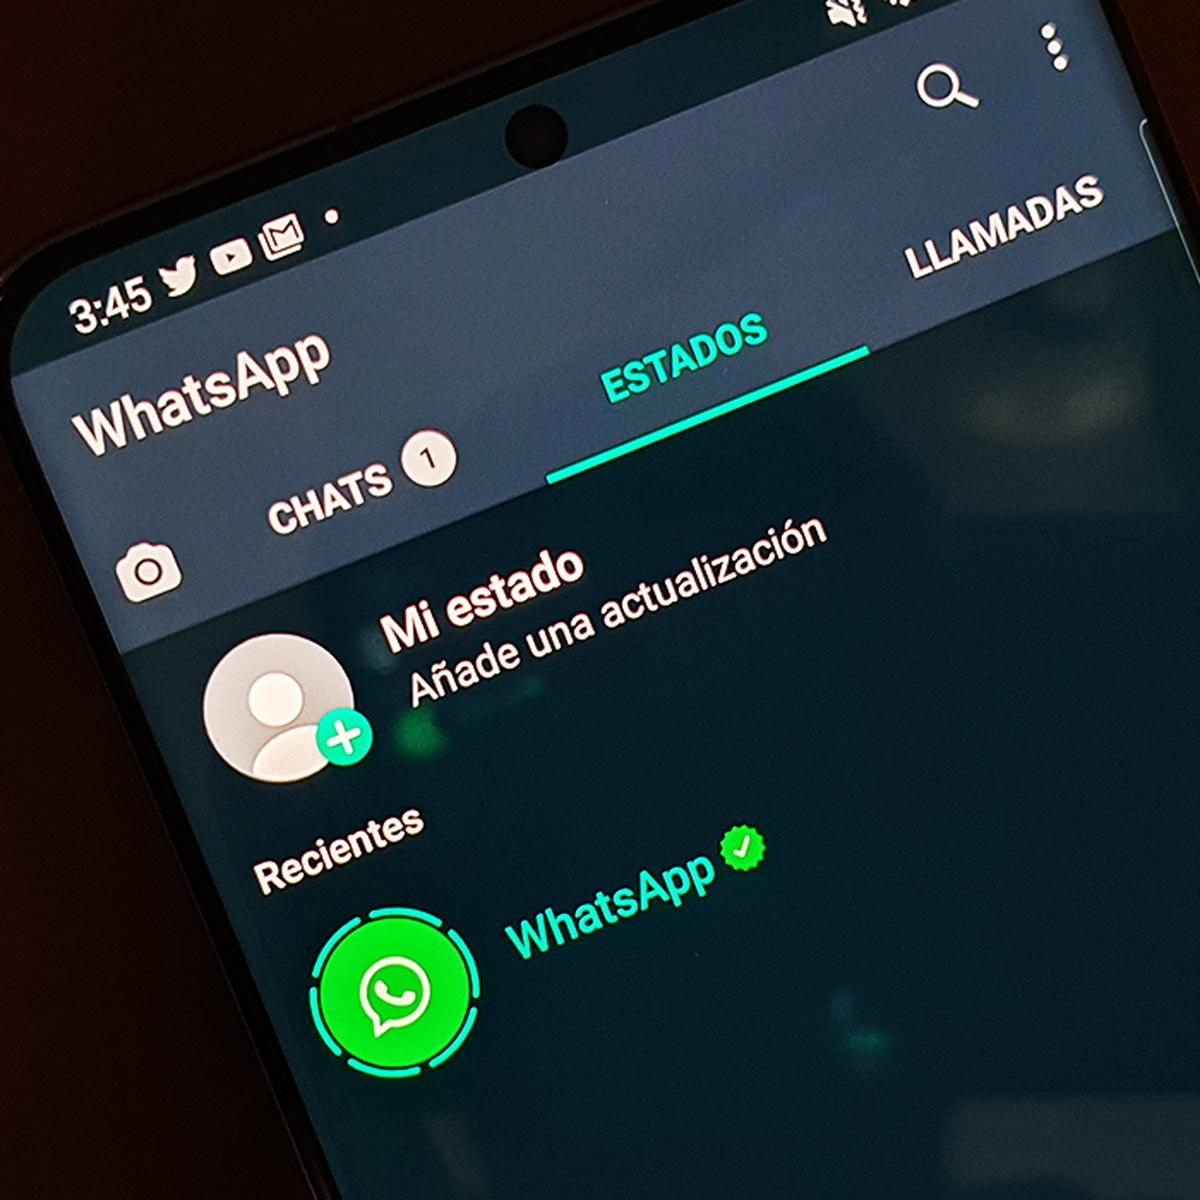 WhatsApp incorpora nueva función para compartir videos